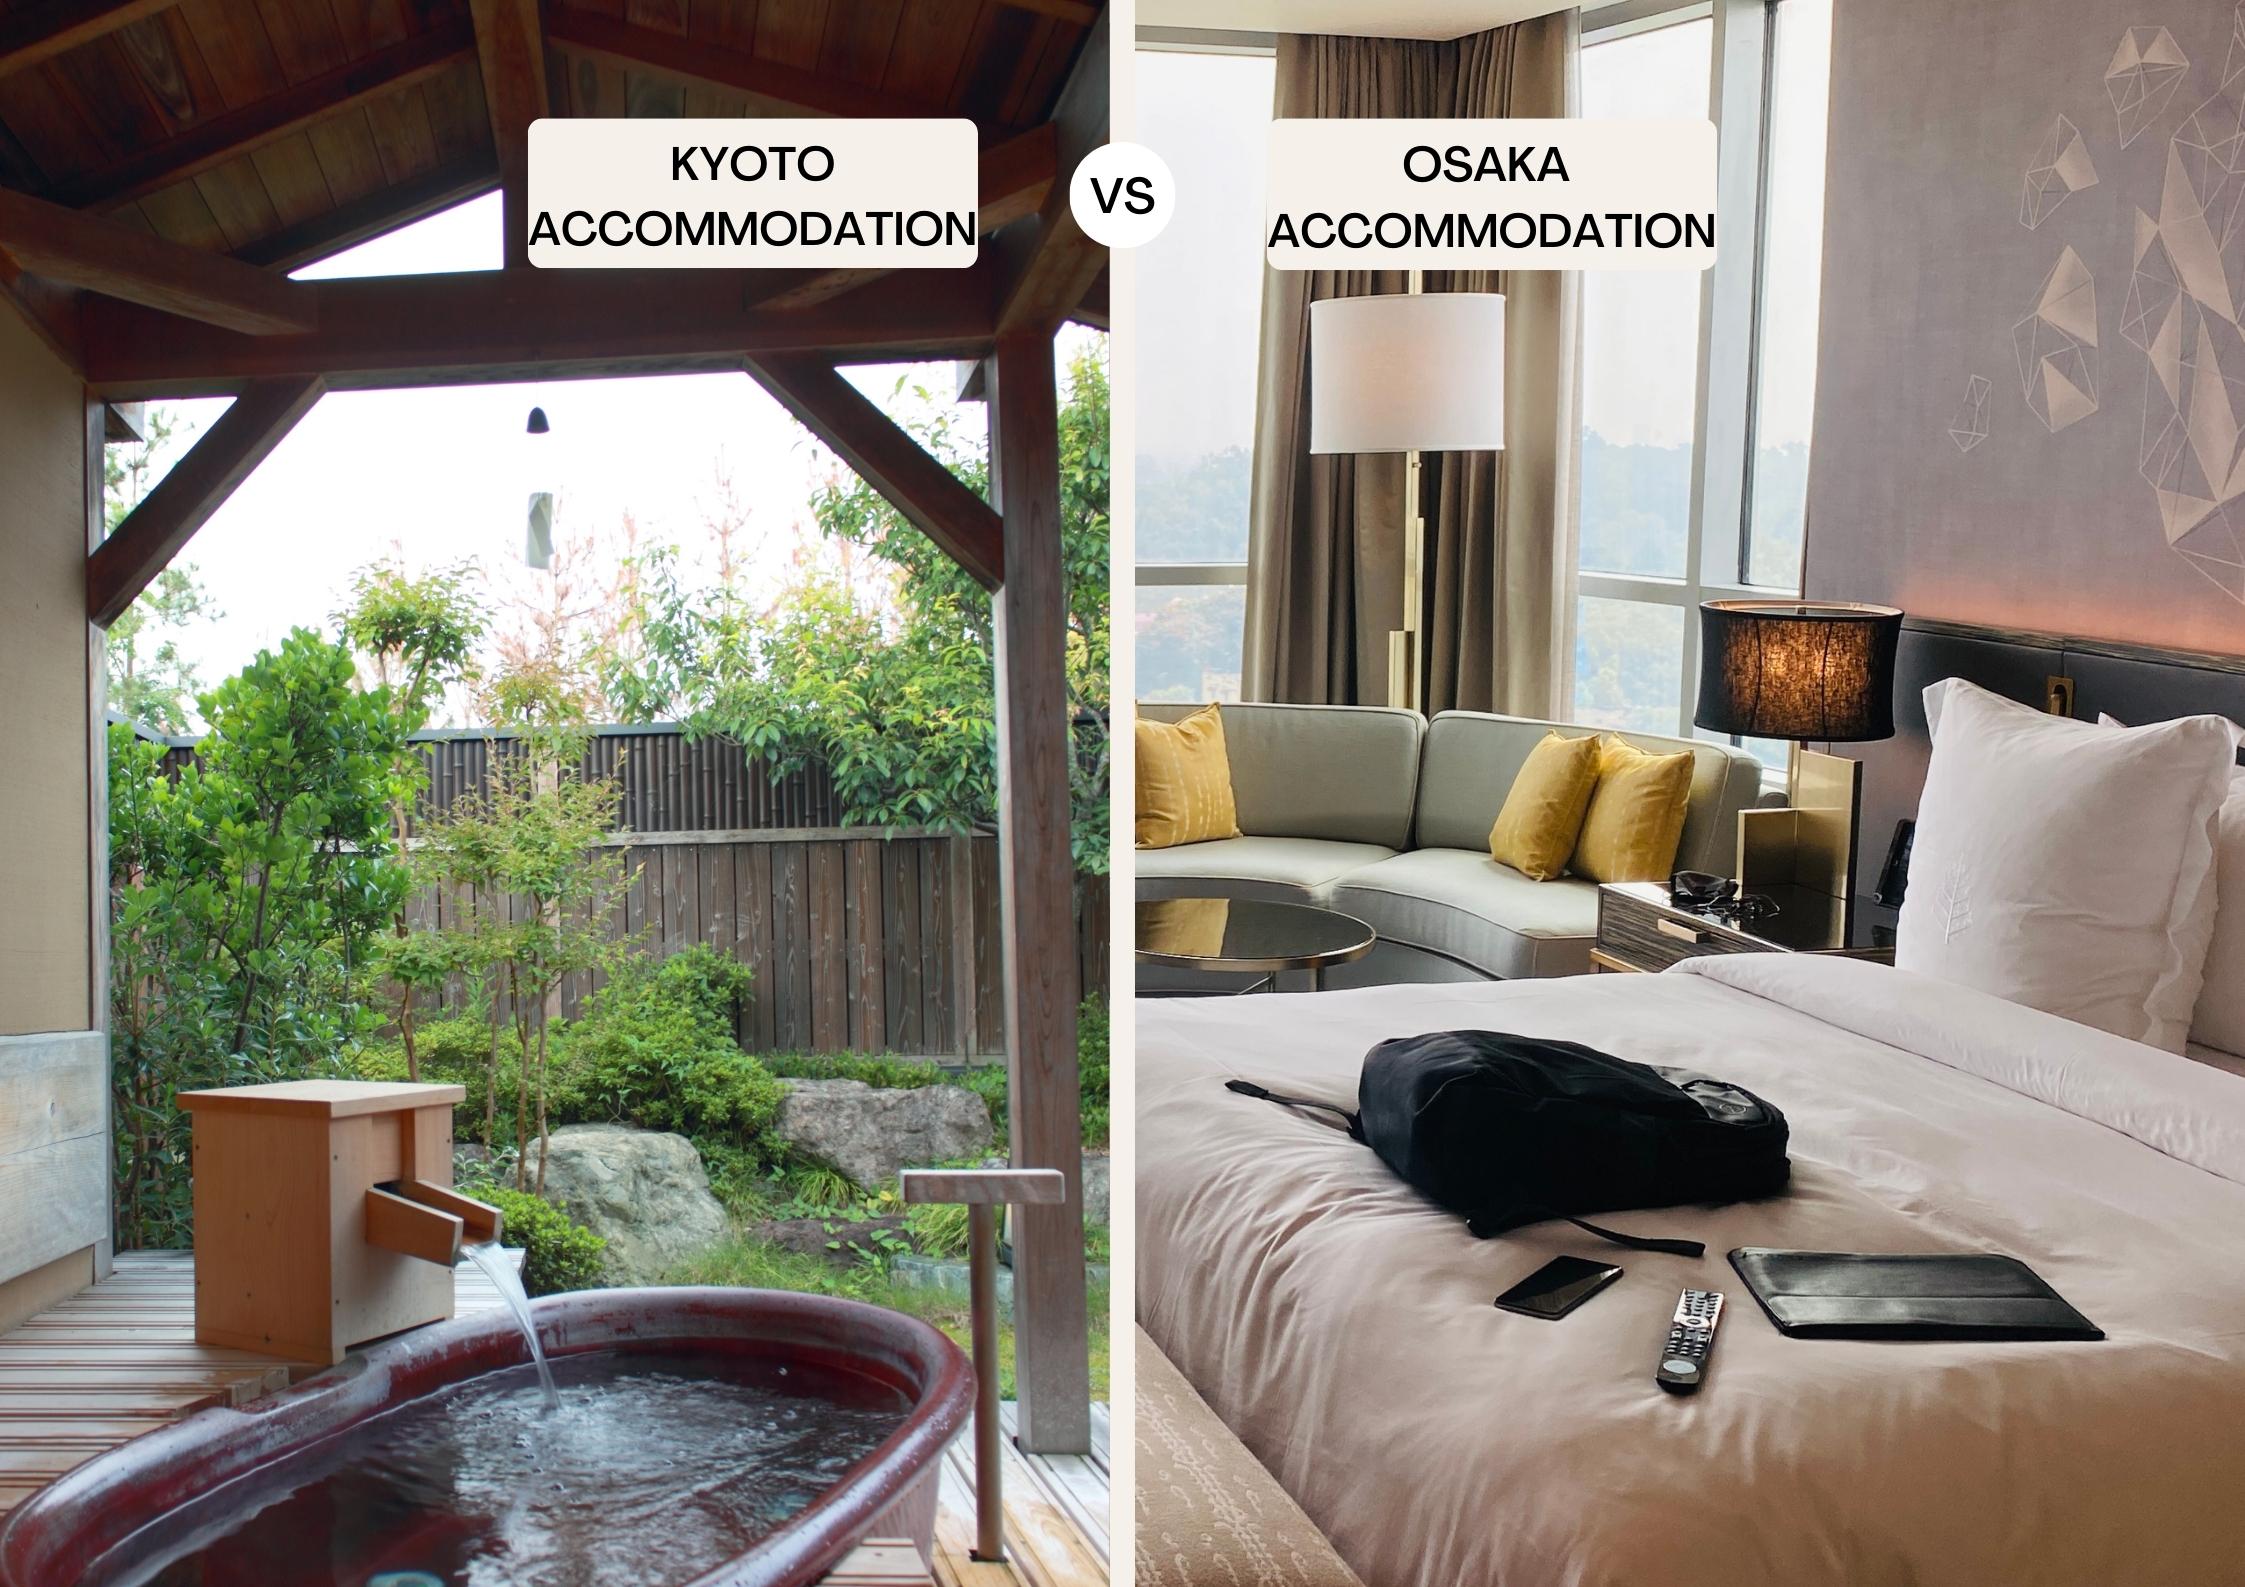 Kyoto vs Osaka accommodation